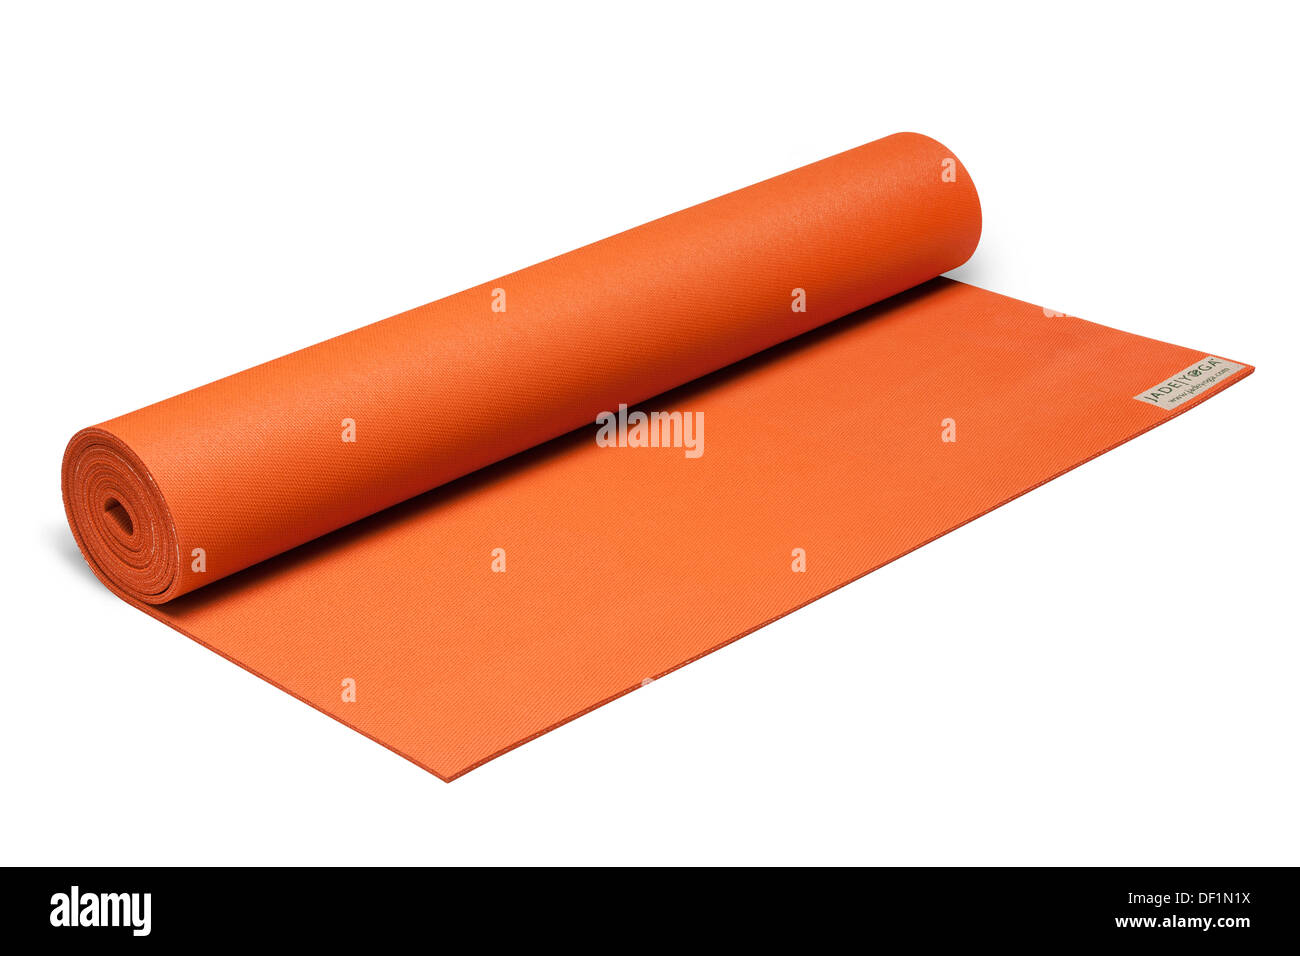 coloured yoga exercise roll mat isolated on white background product image. Stock Photo